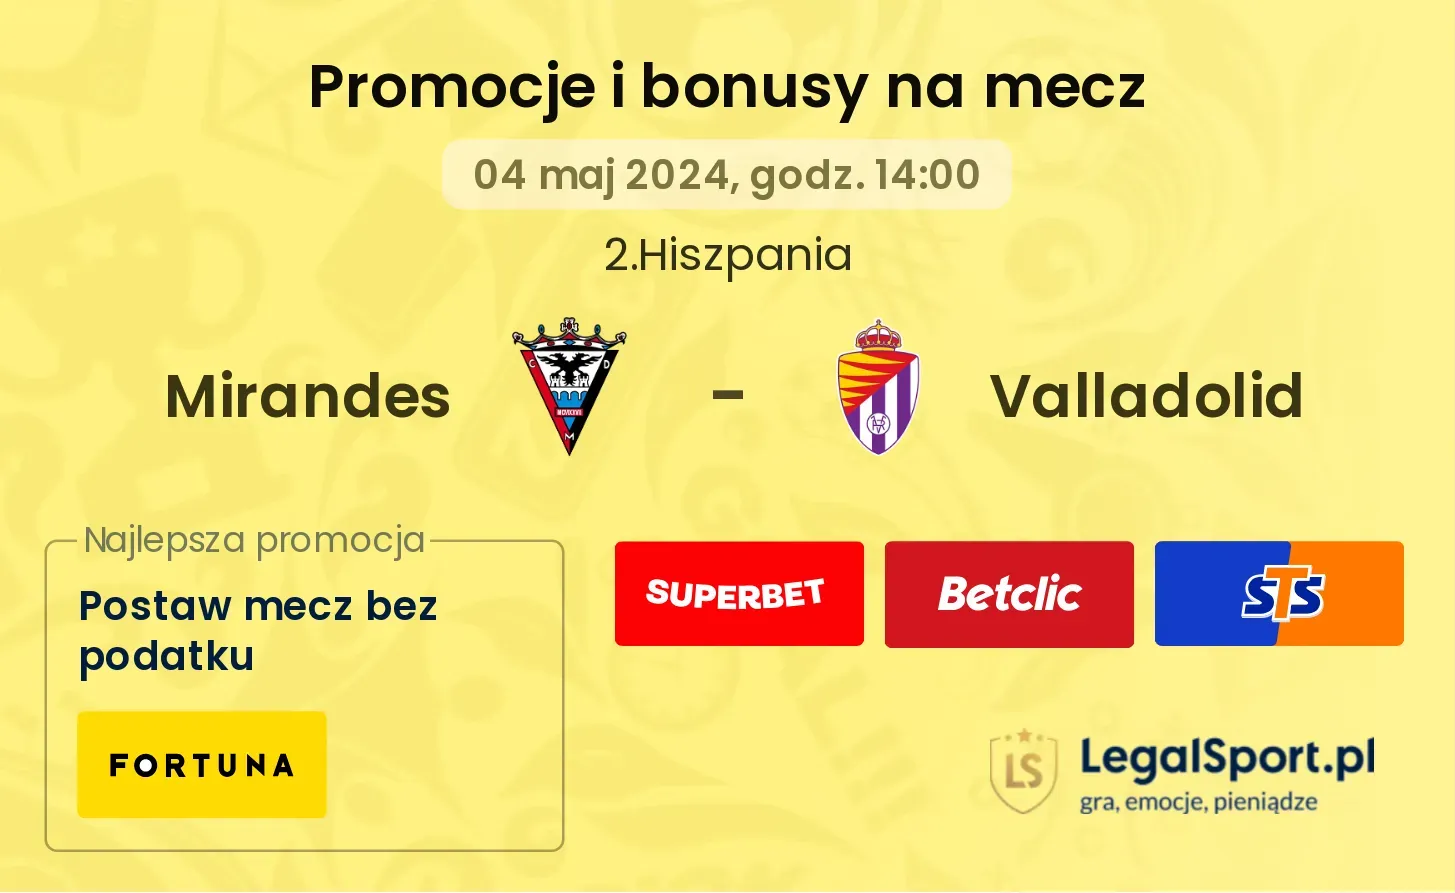 Mirandes - Valladolid promocje bonusy na mecz